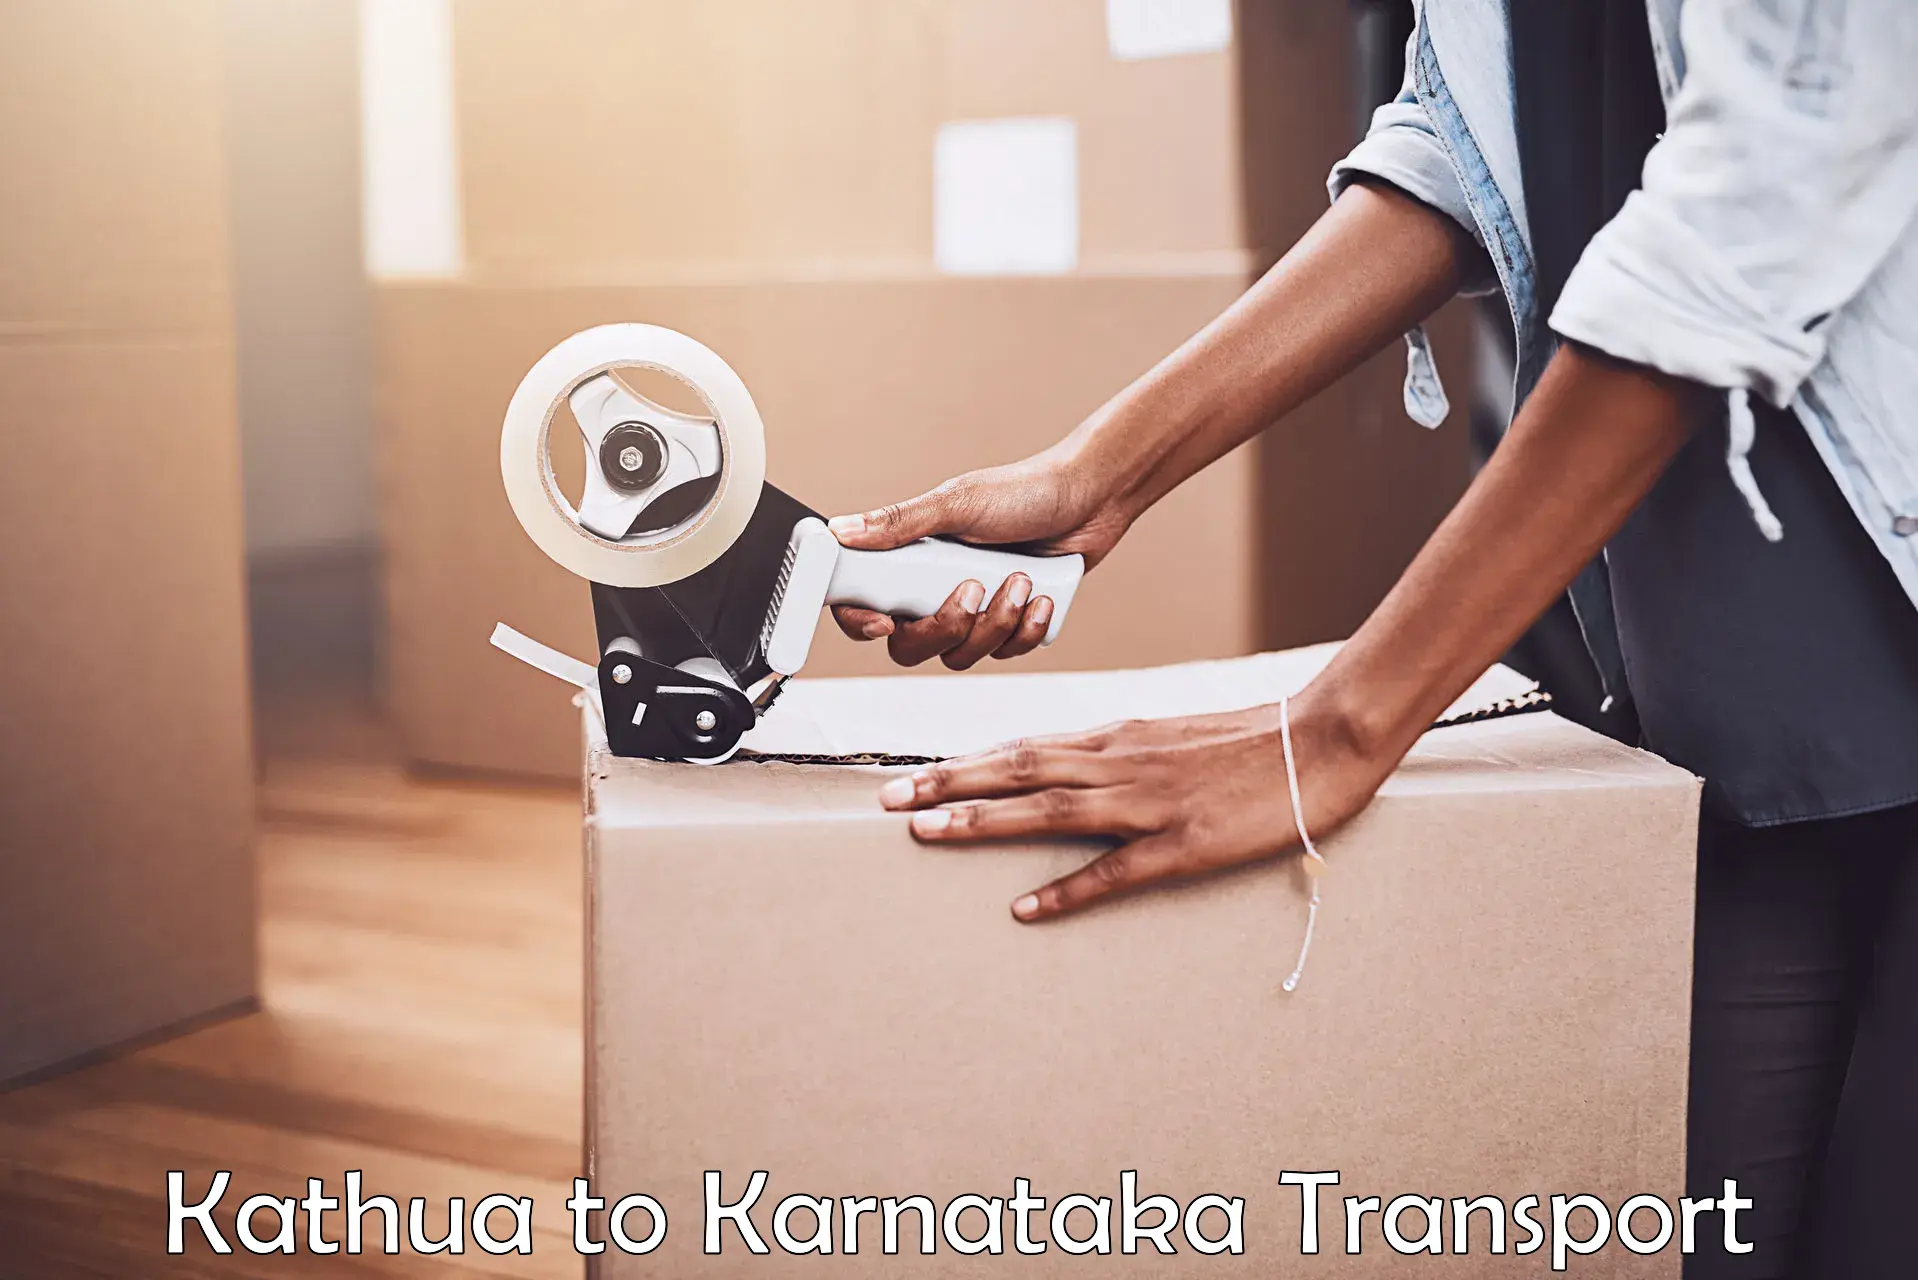 Furniture transport service Kathua to Pavagada